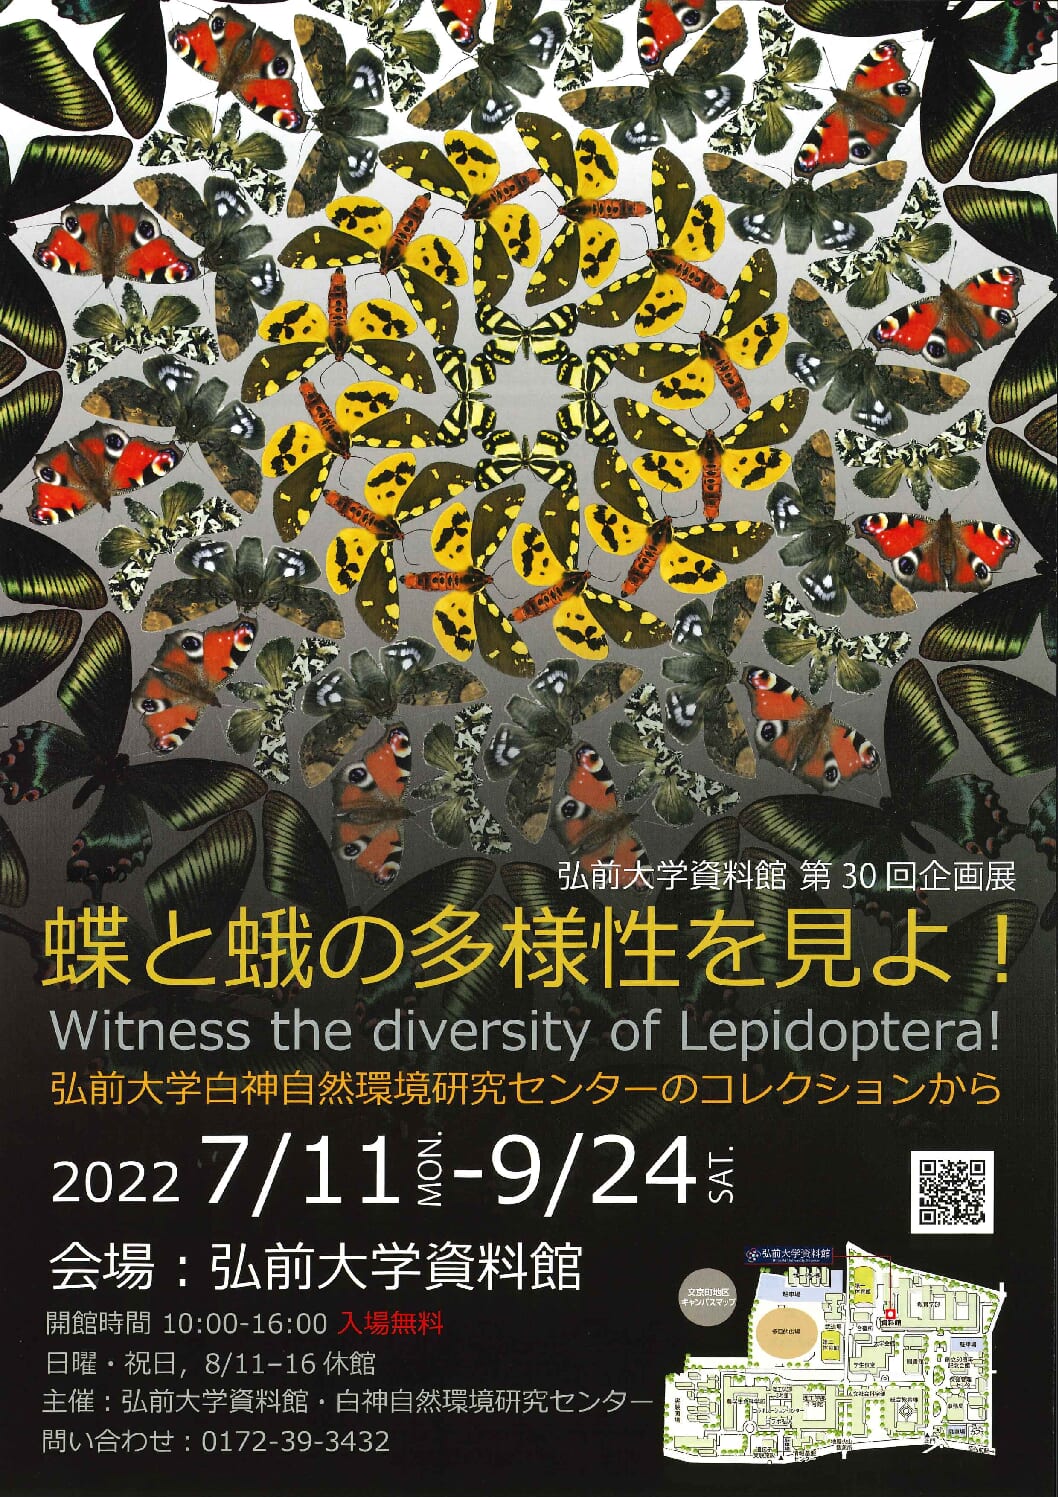 弘前大学資料館第３０回企画展「蝶と蛾の多様性を見よ！」を開催